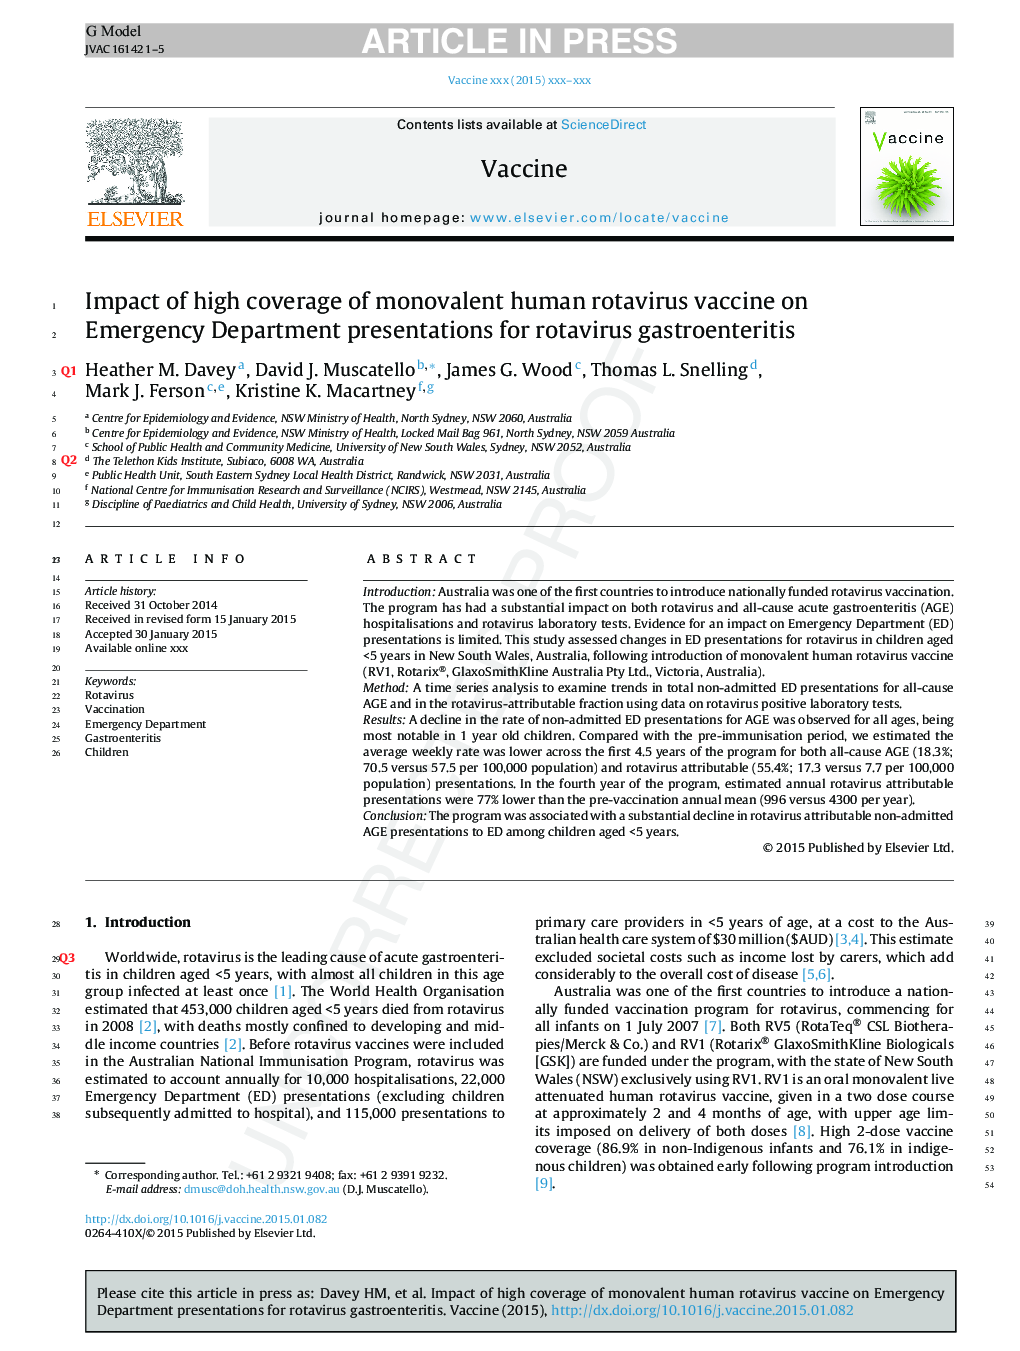 تأثیر پوشش بالای واکسن روتاویروس انووالنت انسانی در ارائه گروه اورژانس برای گاستروآنتریت روتاویروس 